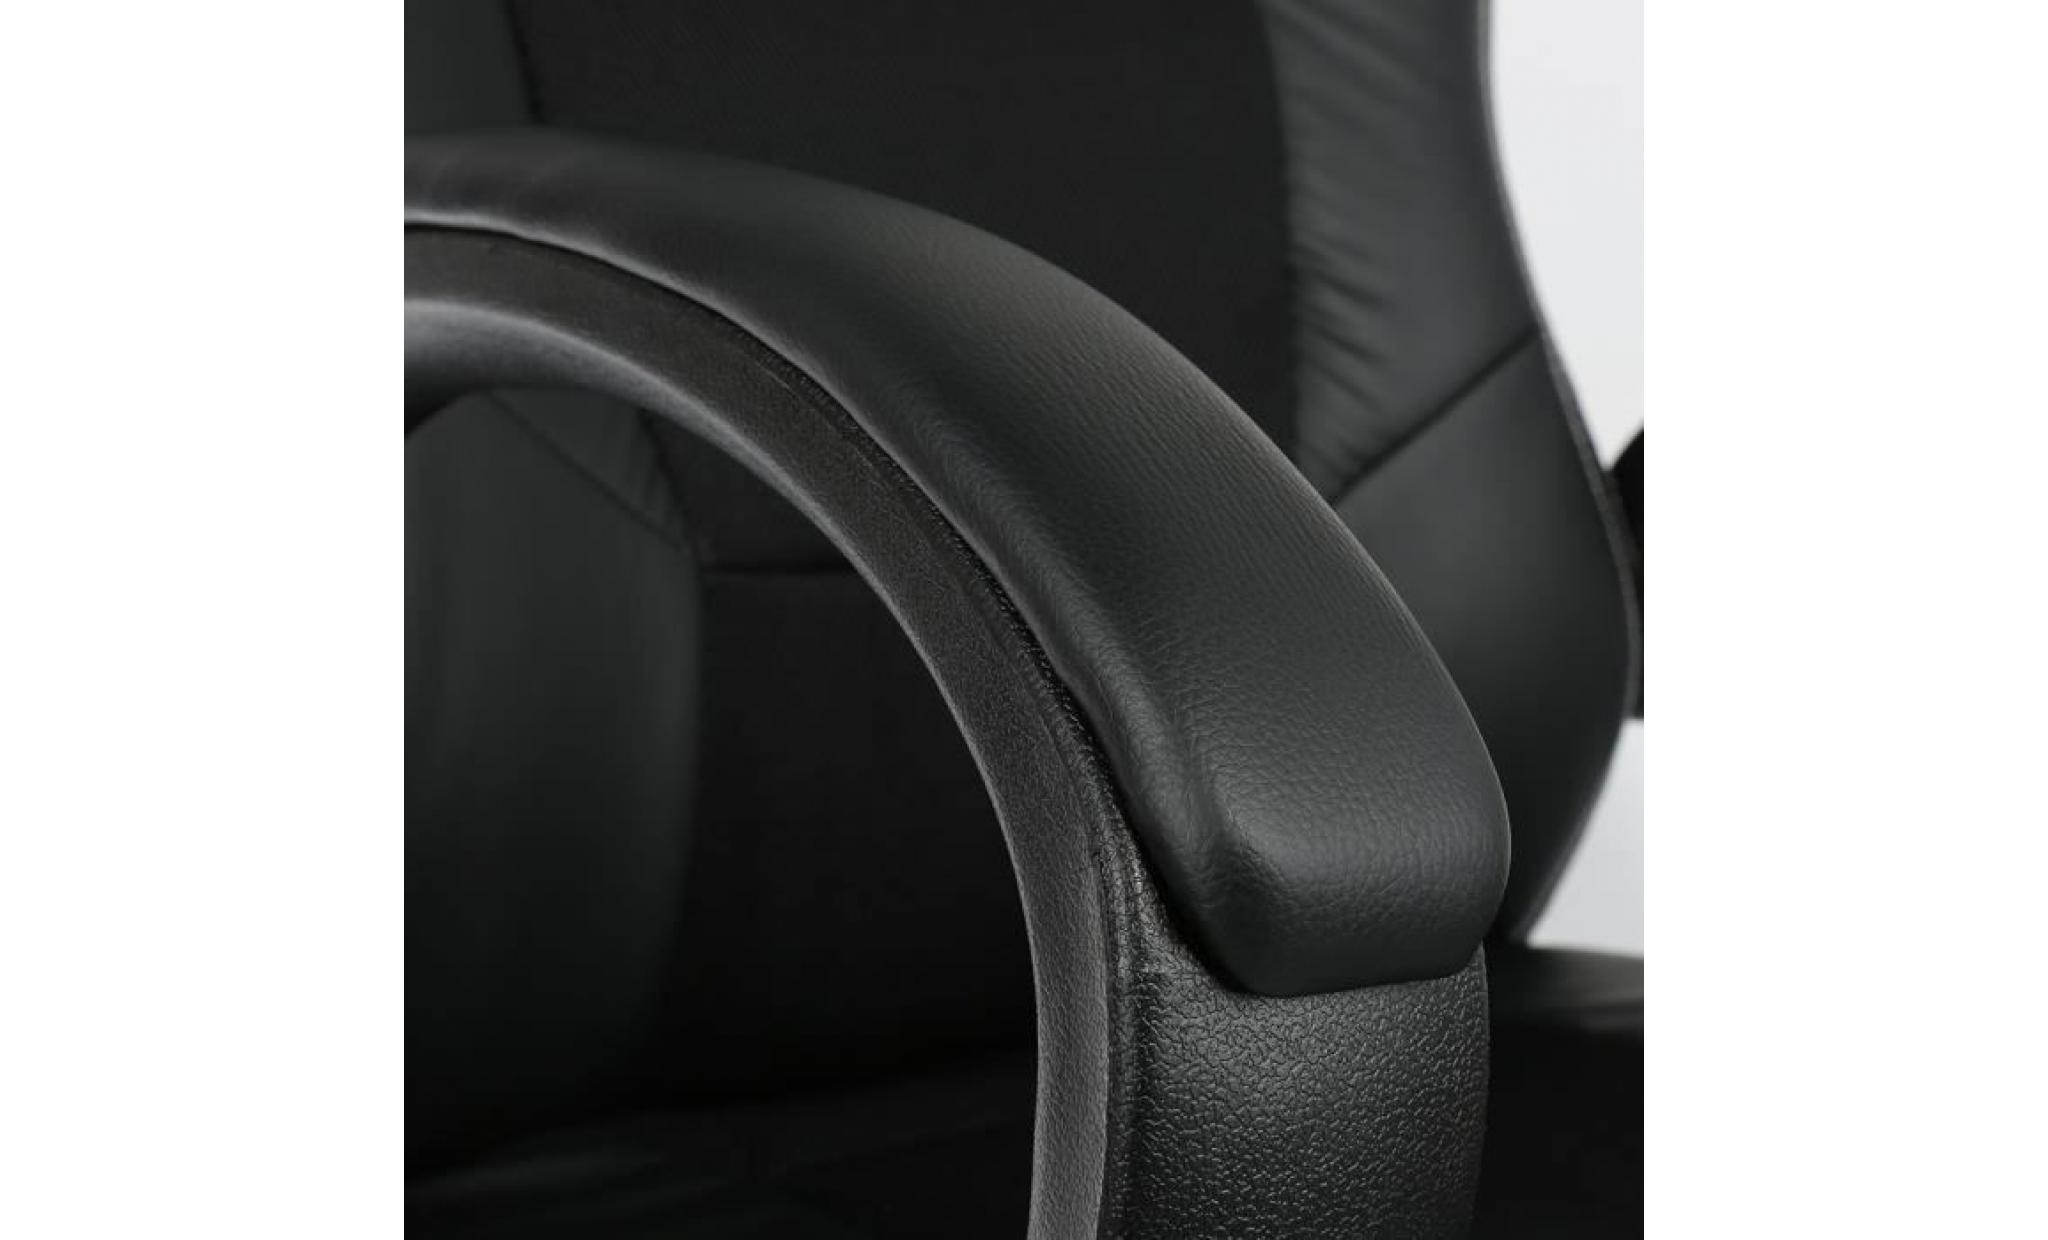 noir  chaise gamer design baquet, fauteuil de bureau   réglable et pivotant pas cher